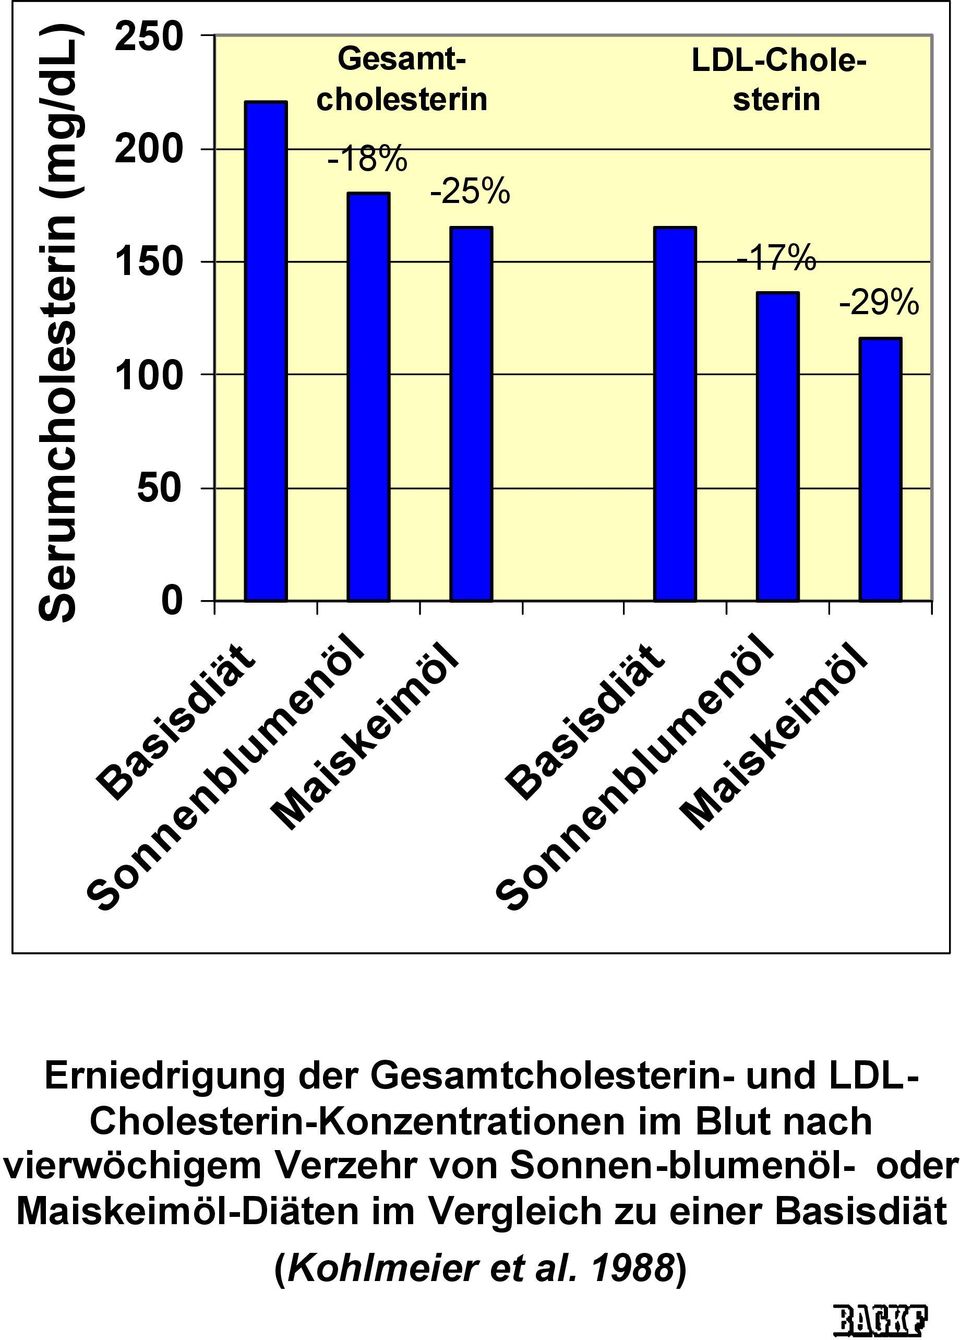 der Gesamtcholesterin- und LDL- Cholesterin-Konzentrationen im Blut nach vierwöchigem Verzehr